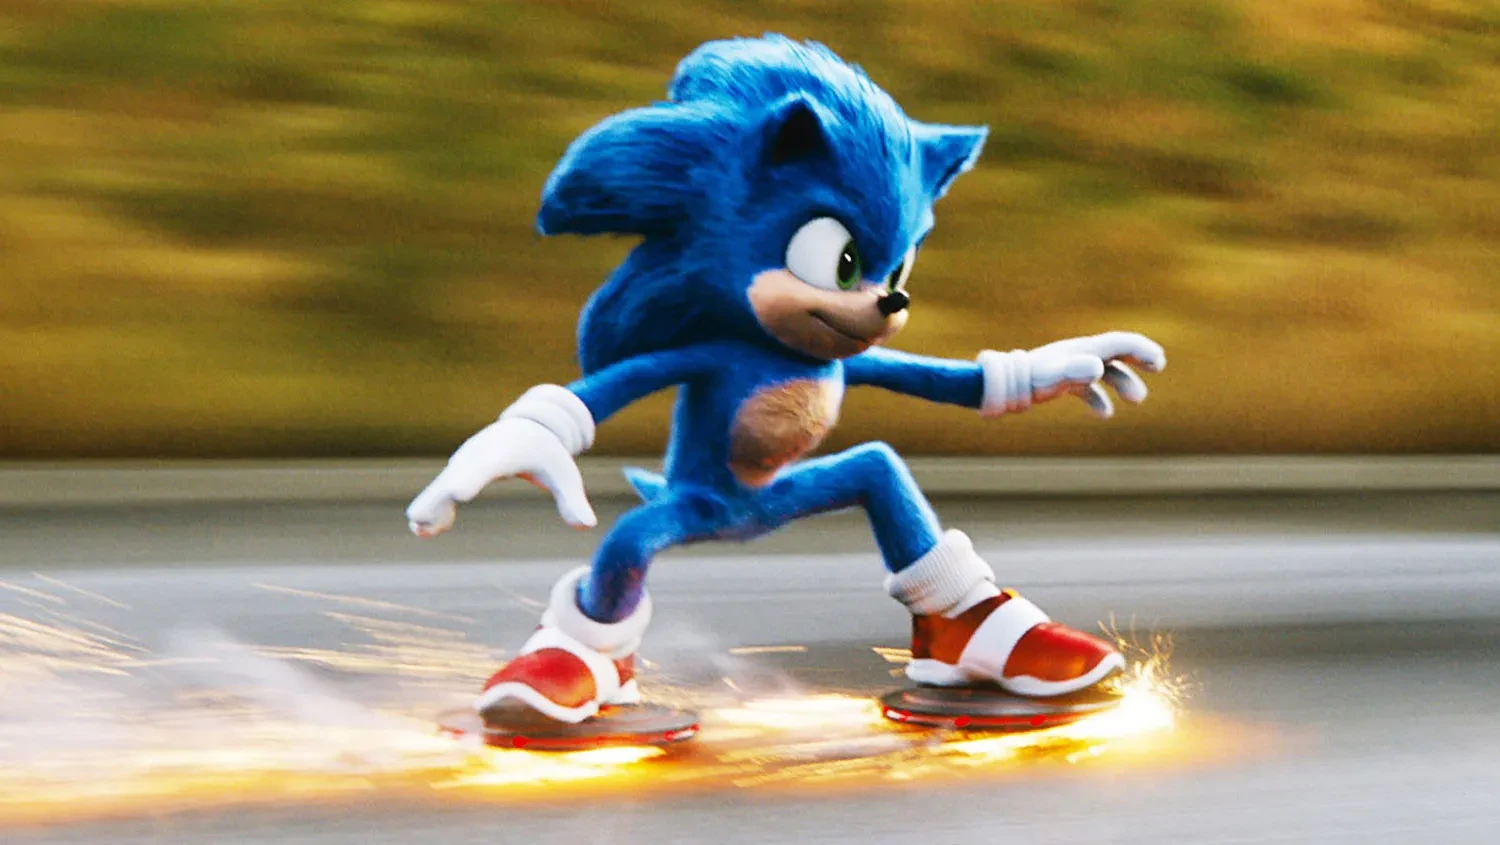 «На самом деле мы так плохо проиграли»: Сообщается, что Sonic 3 допустил огромную ошибку с кастингом Кристен Риттер